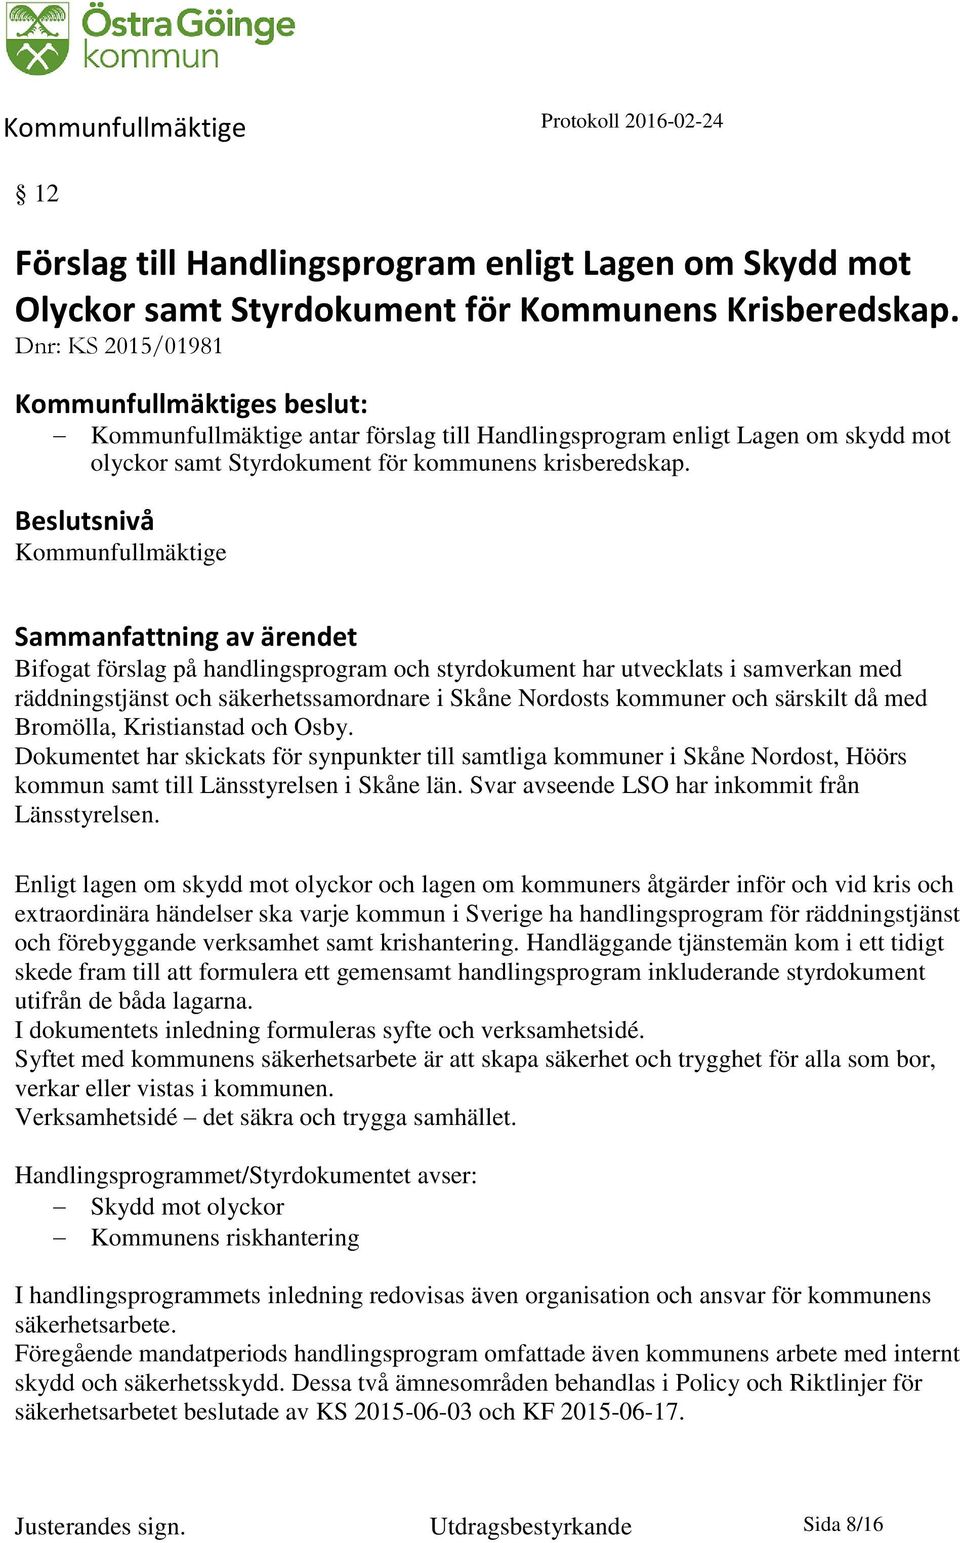 Beslutsnivå Kommunfullmäktige Bifogat förslag på handlingsprogram och styrdokument har utvecklats i samverkan med räddningstjänst och säkerhetssamordnare i Skåne Nordosts kommuner och särskilt då med